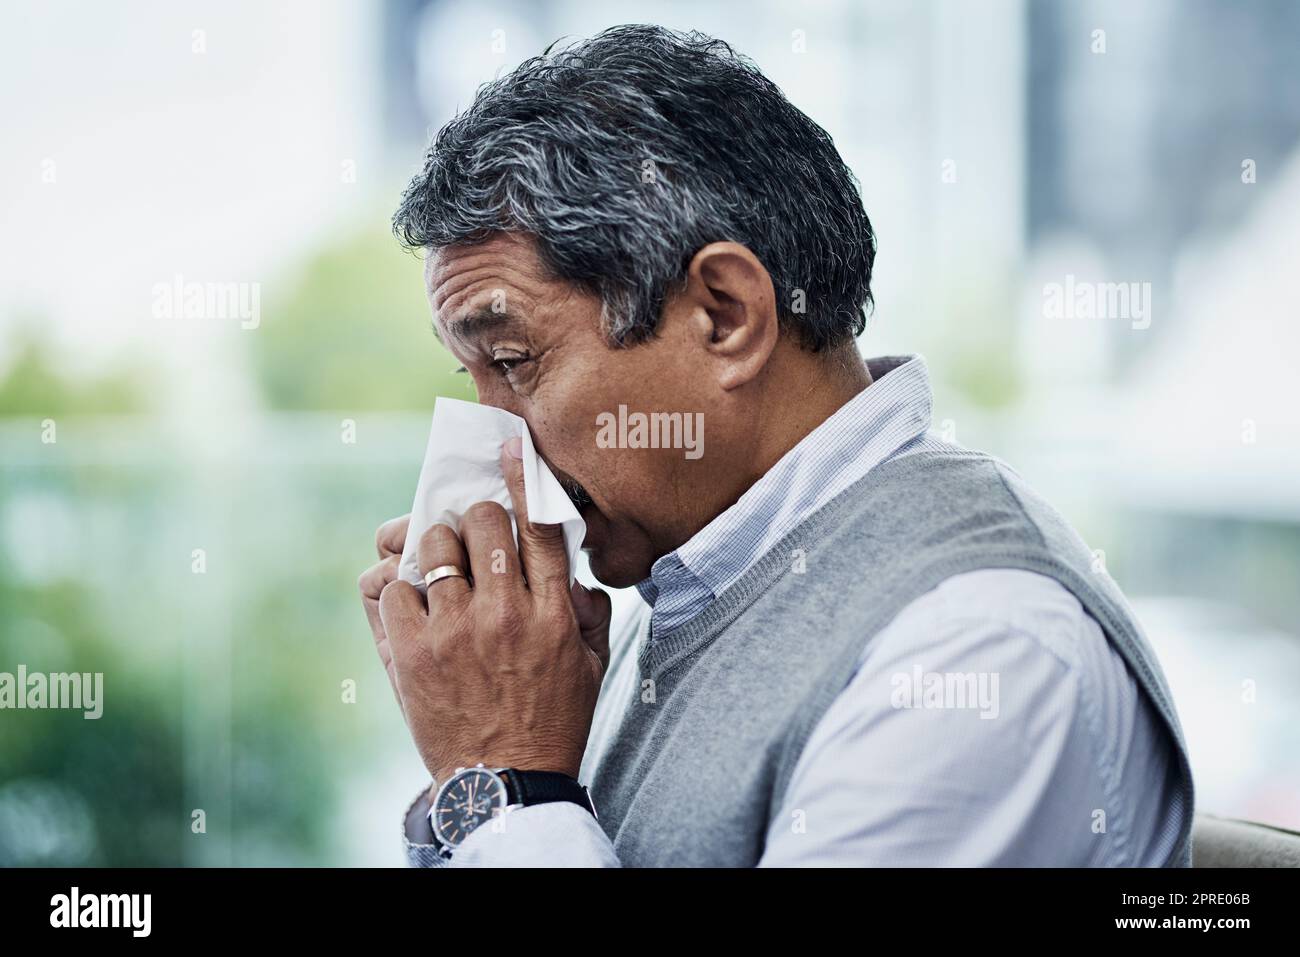 La saison de la grippe est une fois de plus sur nous. Un homme mûr soufflant son nez. Banque D'Images